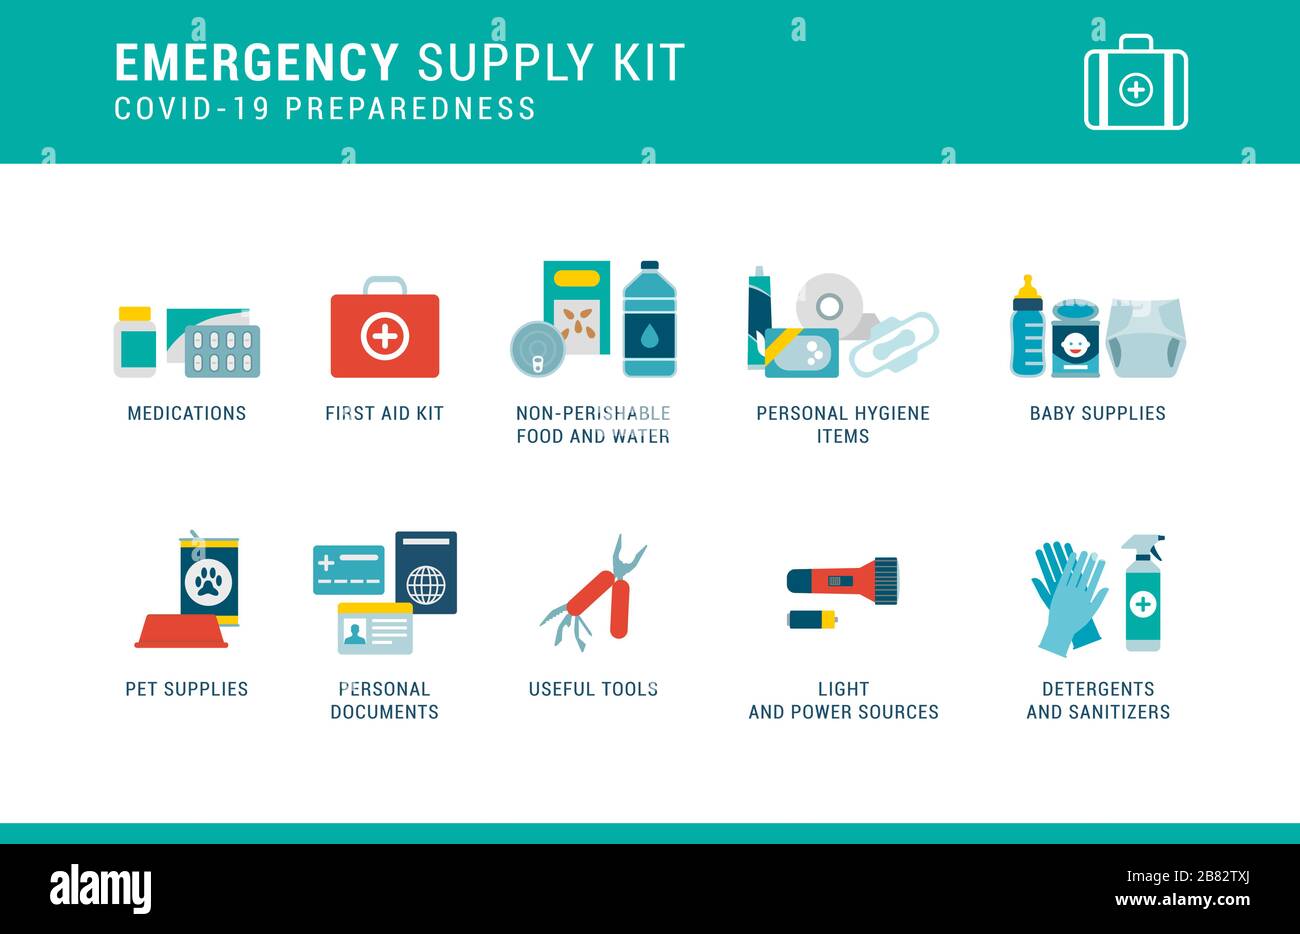 Preparación para el coronavirus Covid-19: Kit de suministros de emergencia con artículos esenciales para llevar en casa Ilustración del Vector